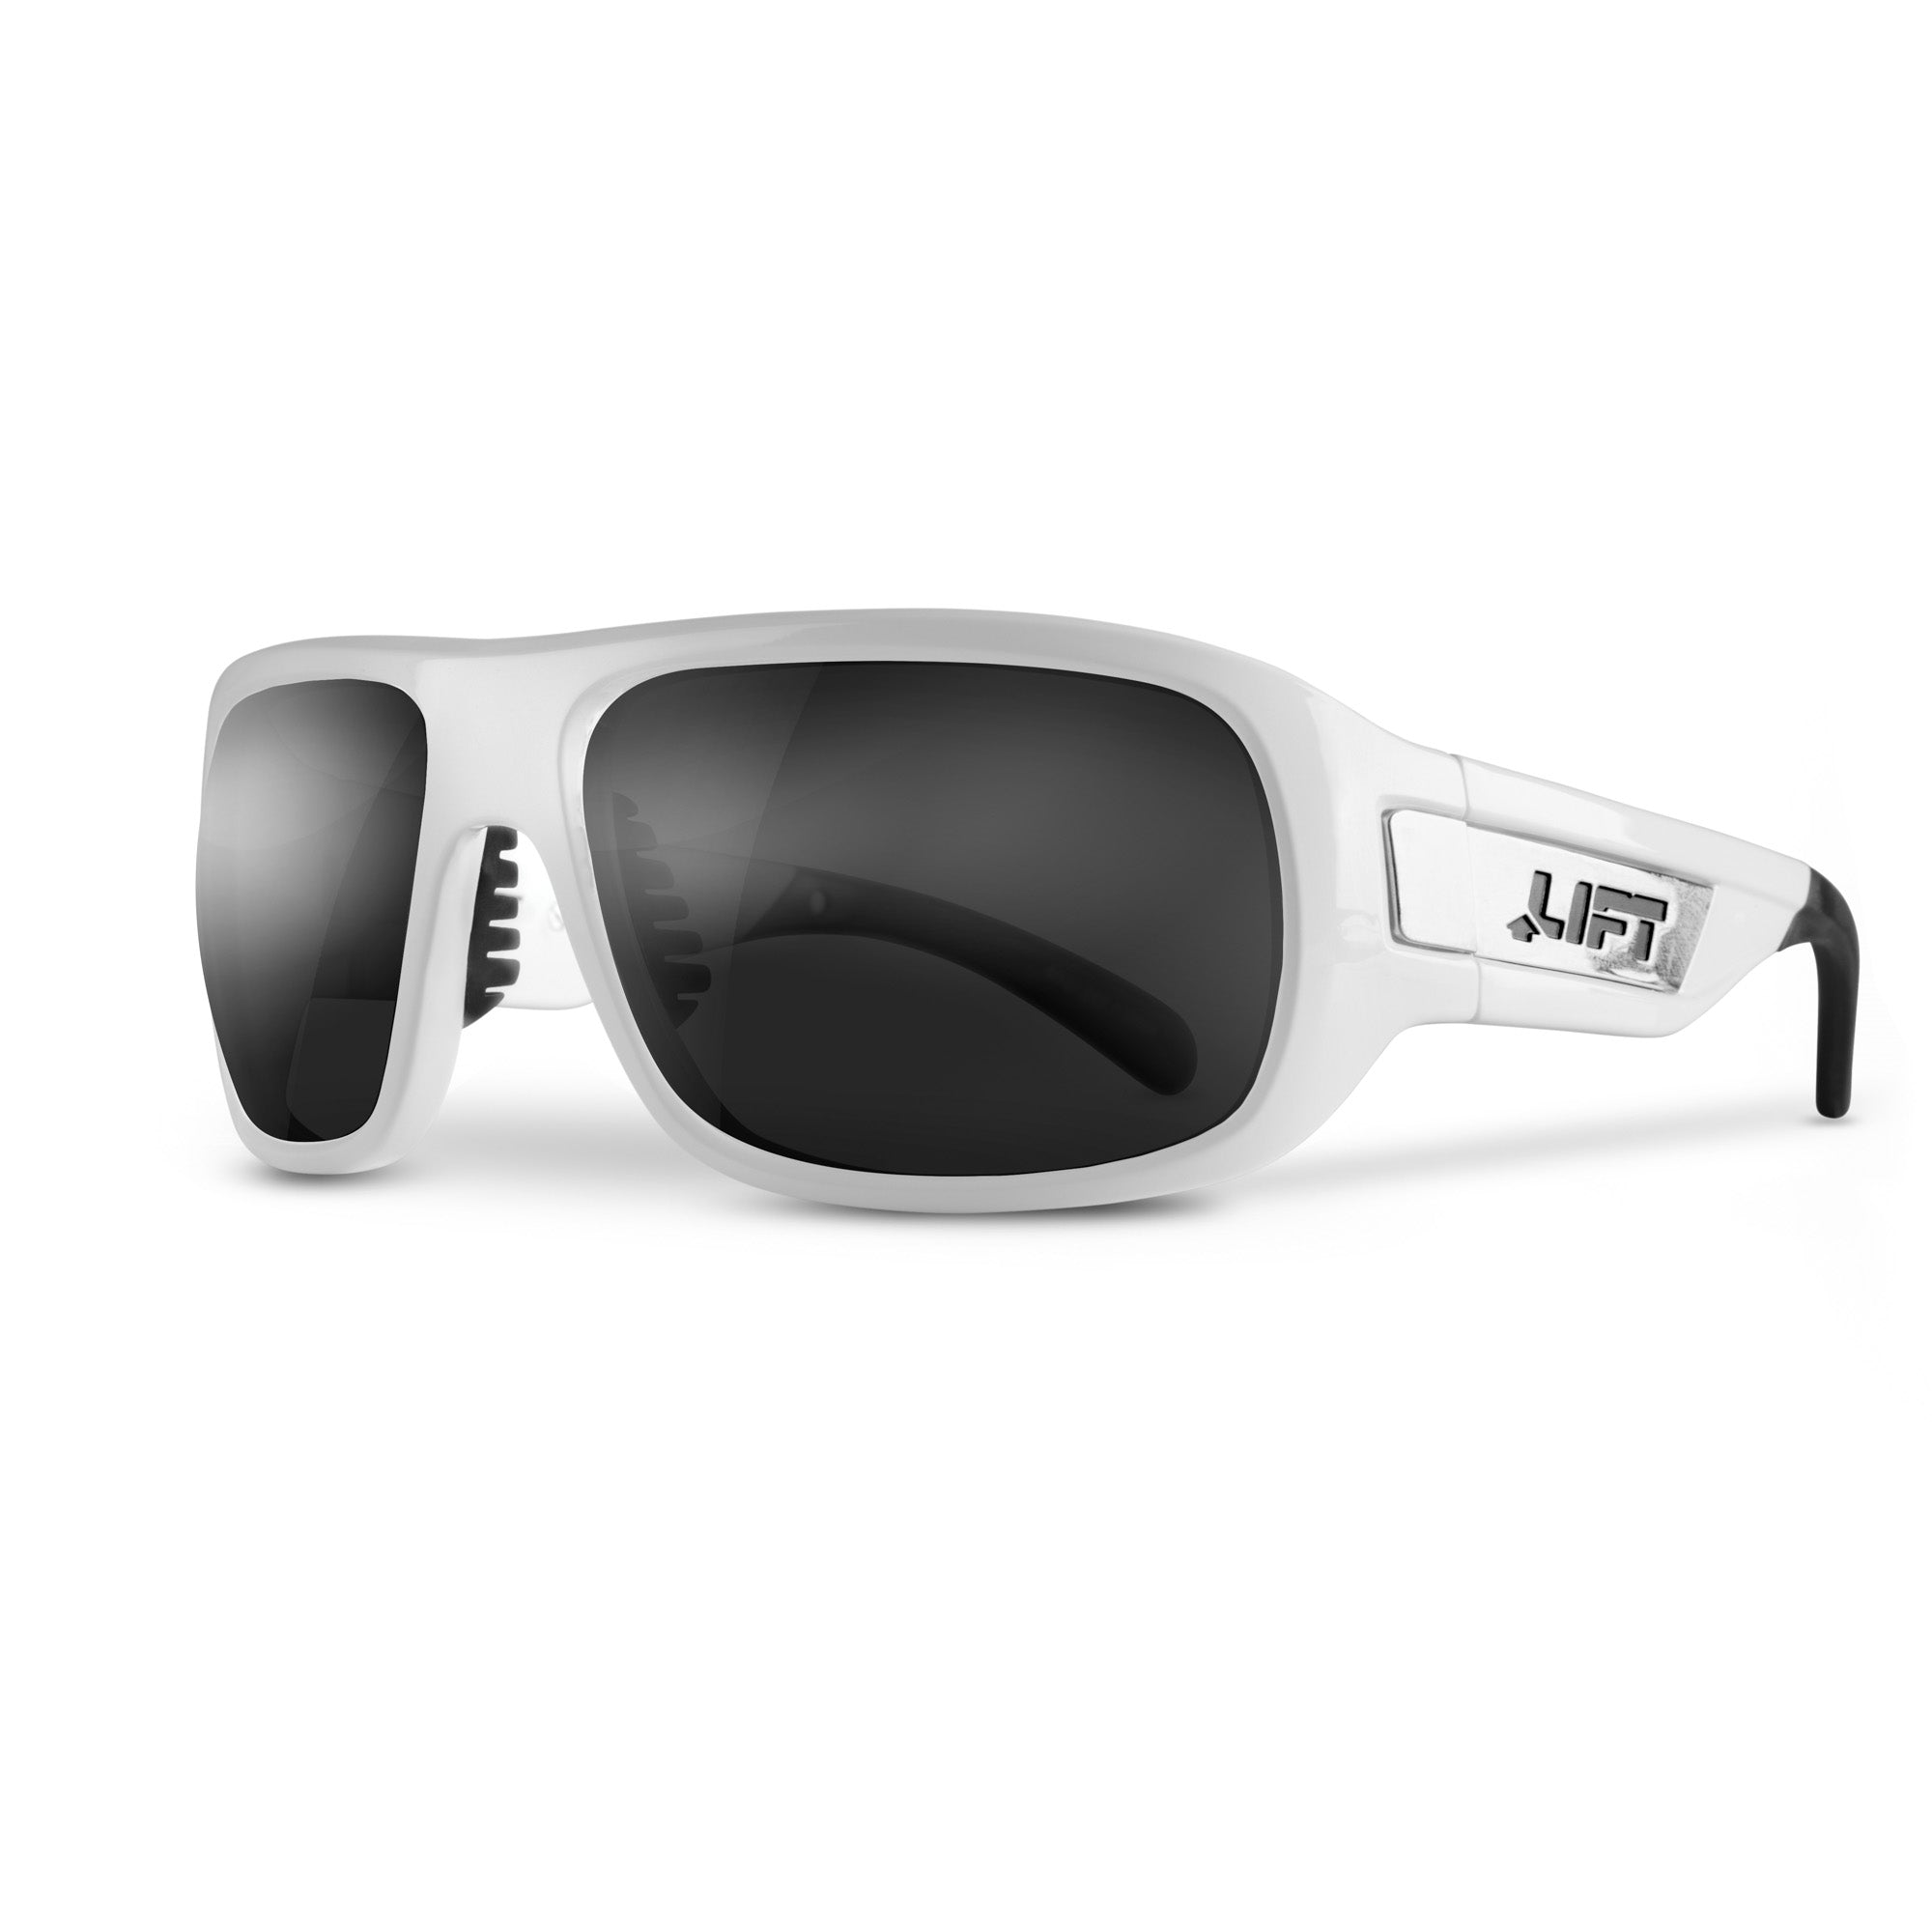 BOLD Sunglasses - White - LIFT Aviation